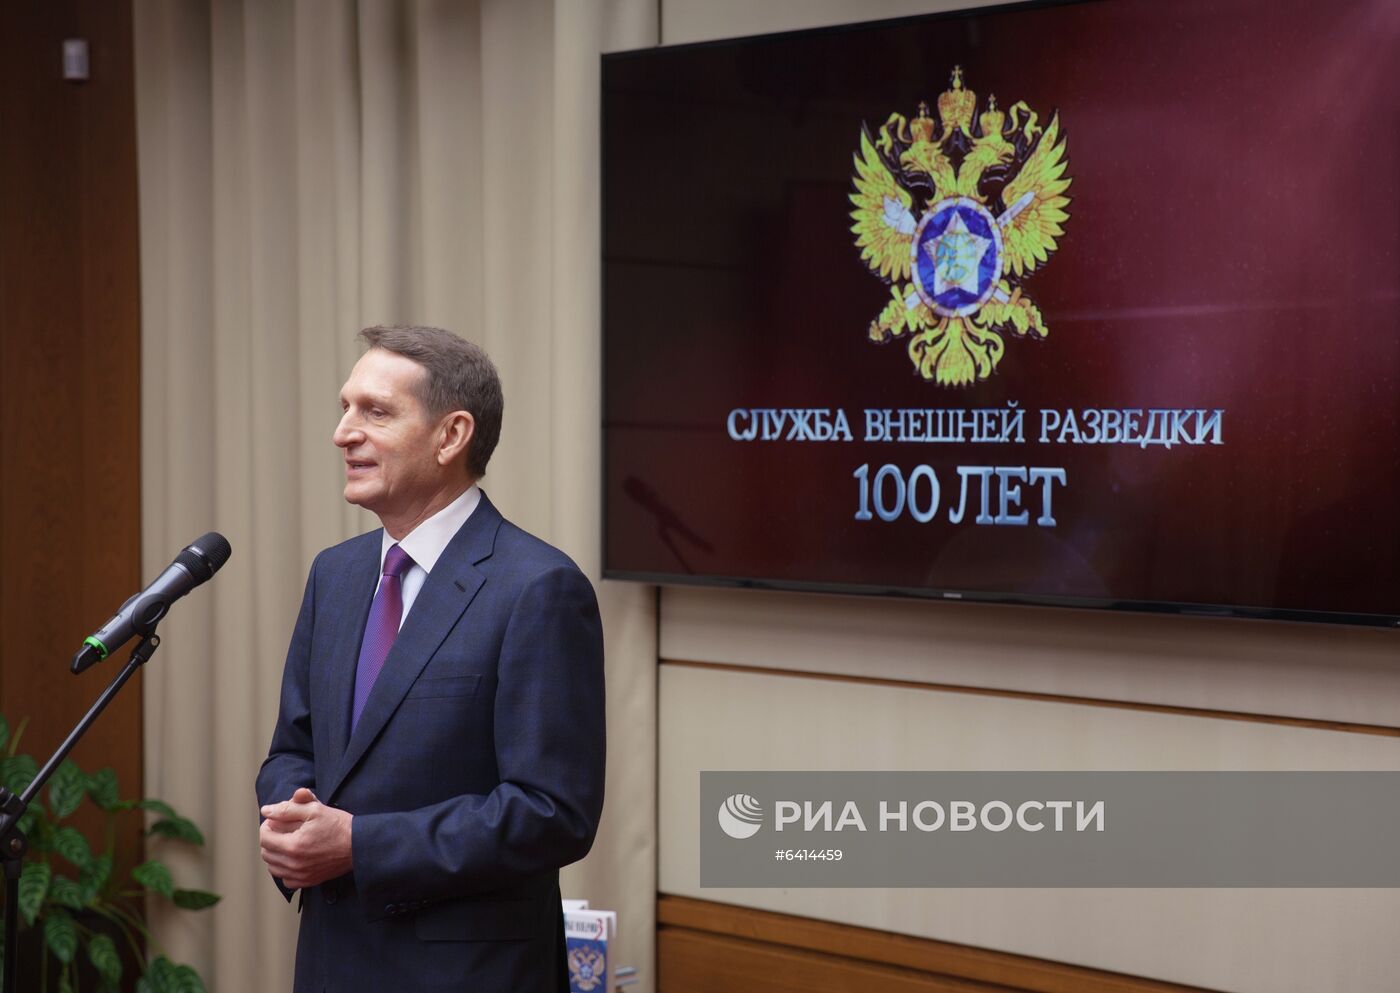 Мероприятия с участием С. Нарышкина, приуроченные к 100-летию отечественной внешней разведки